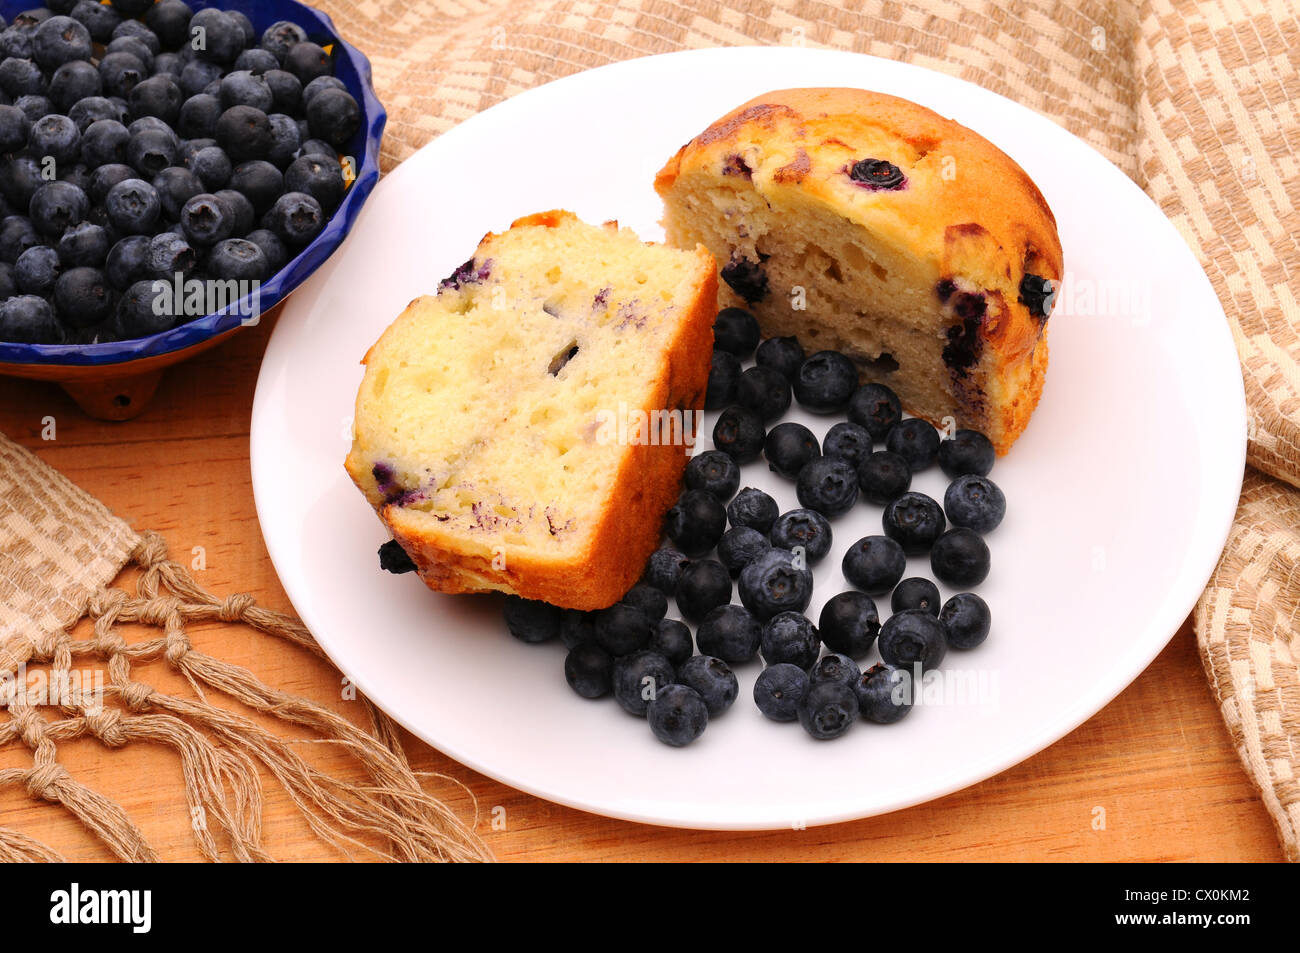 De délicieux muffins aux bleuets réduit de moitié, avec des petits fruits sur une assiette blanche sur une table en bois rustique. Banque D'Images